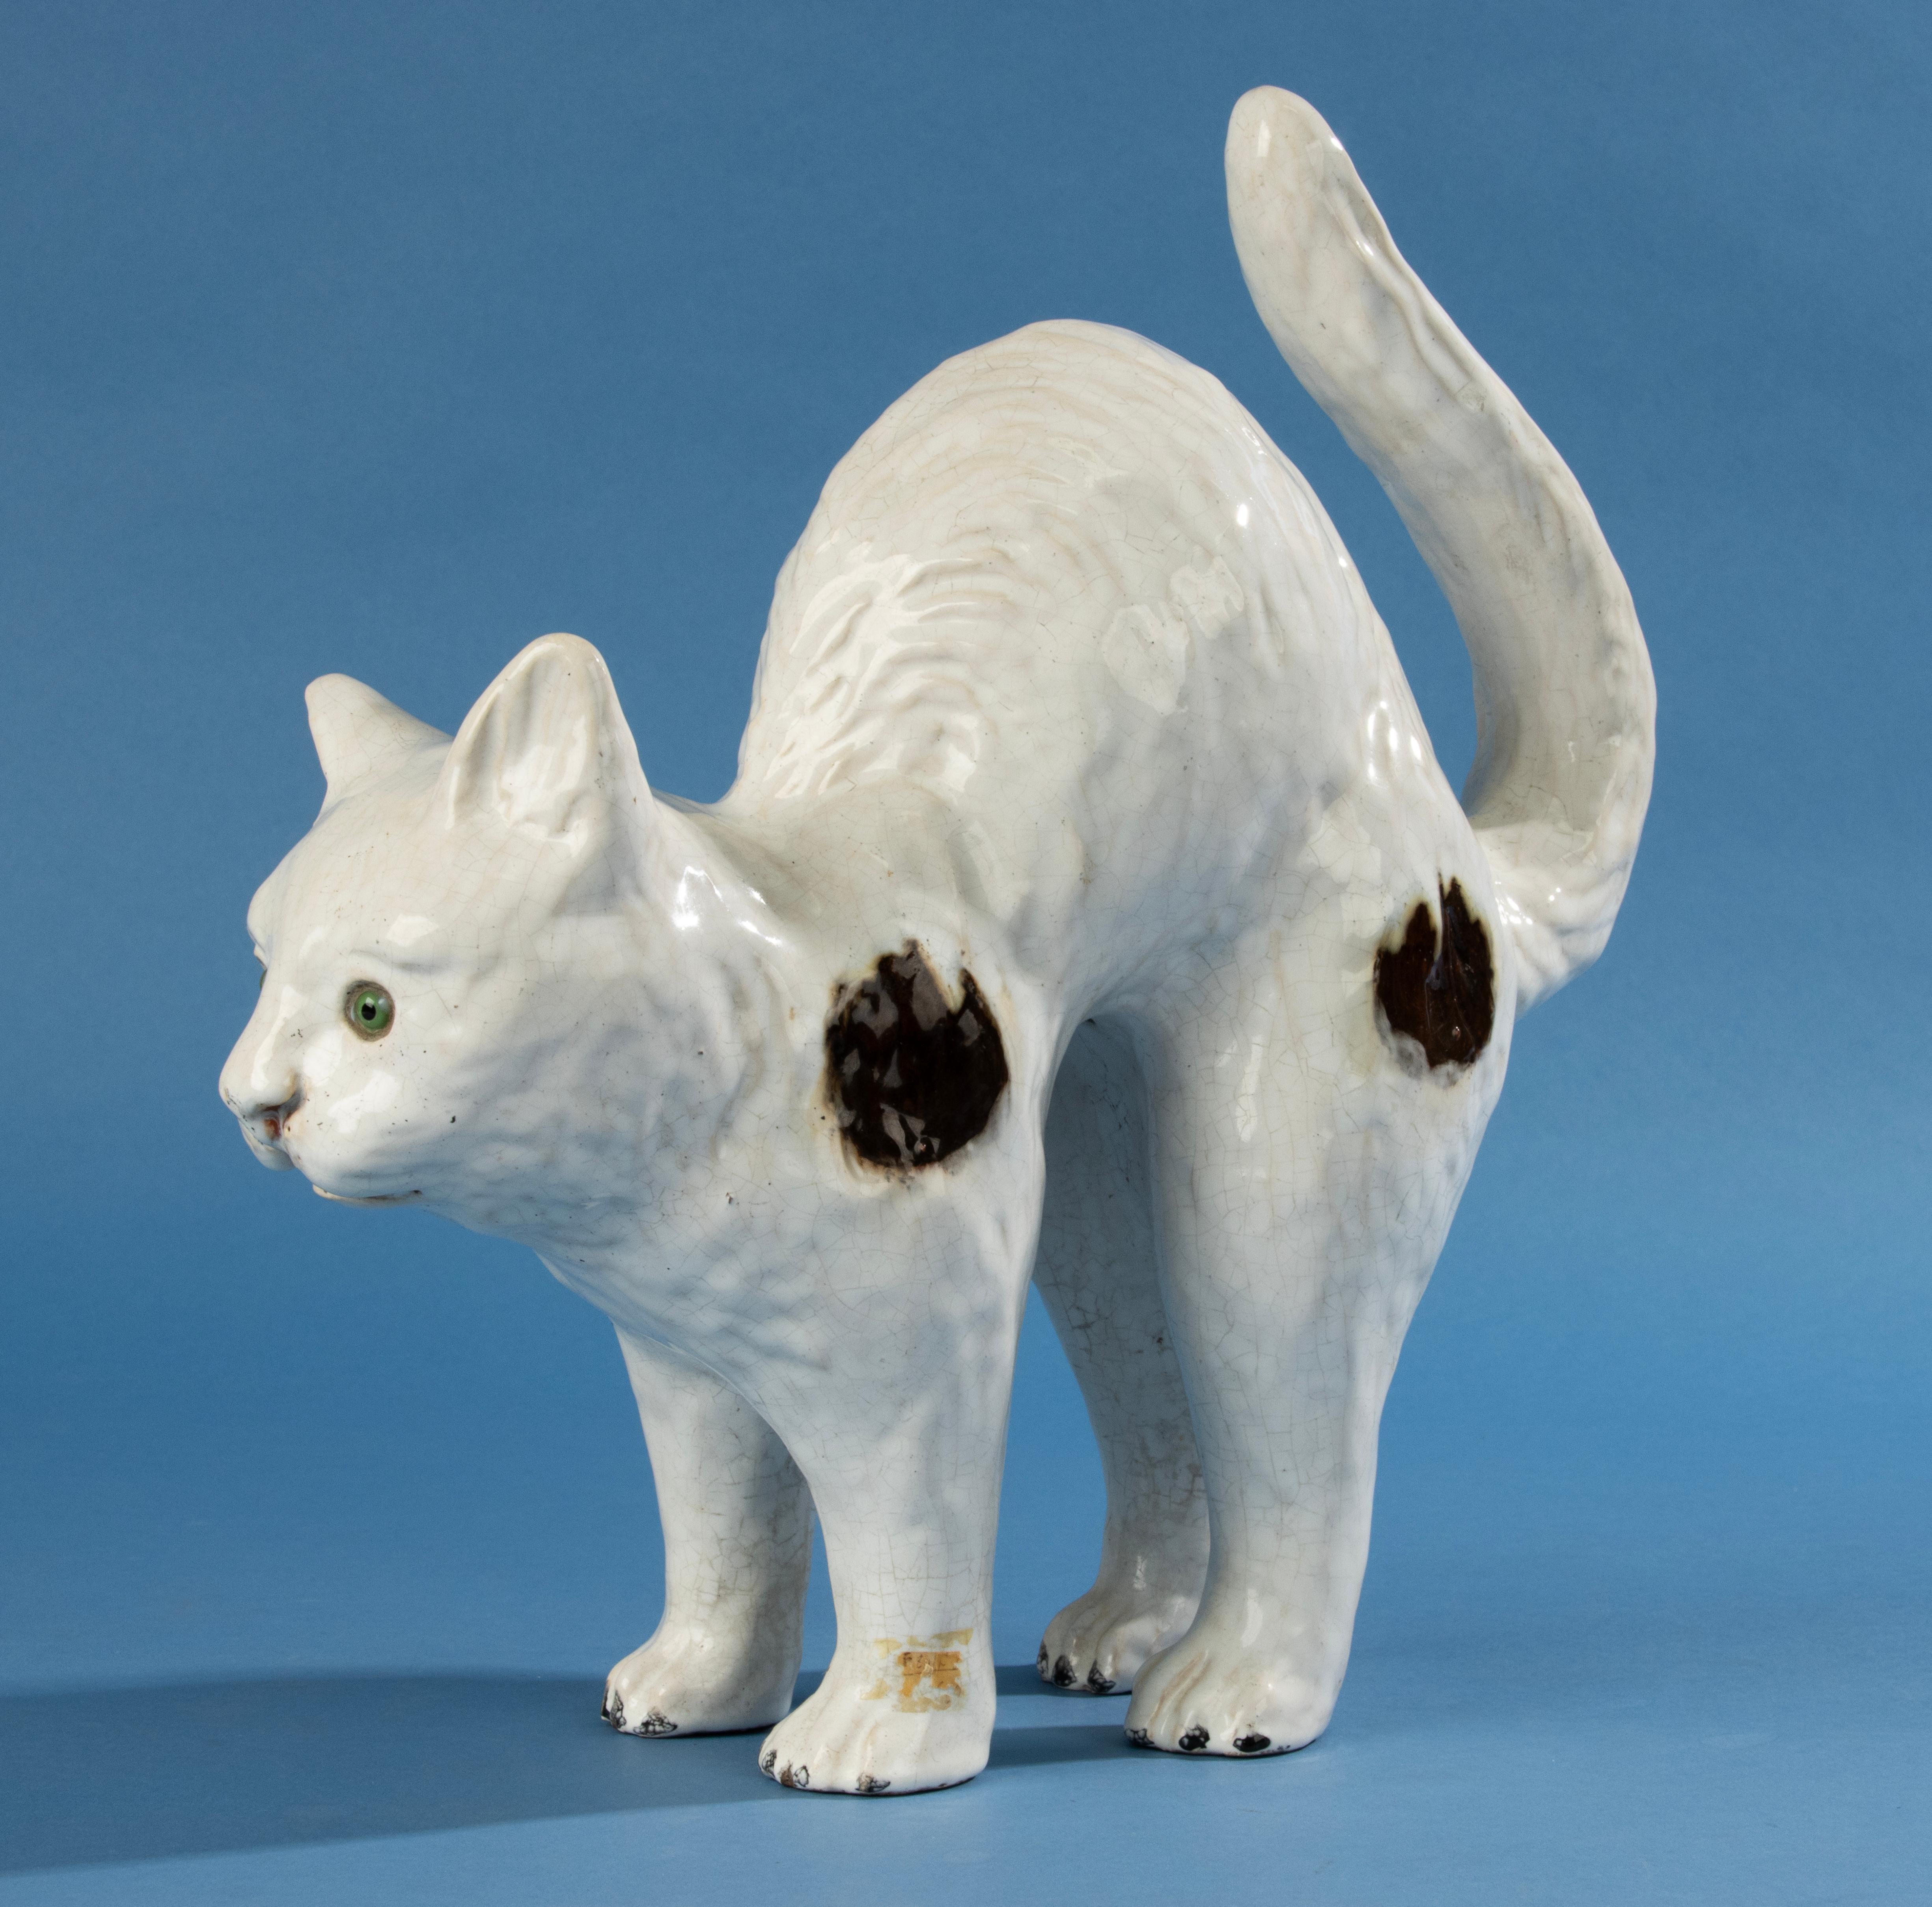 Un beau chat en céramique, probablement réalisé par le fabricant français Mesnil de Bavent. Le chat est en terre cuite et présente une belle couche d'étain-glaçure avec des craquelures claires. Le chat a des yeux de verre.
La sculpture n'est pas